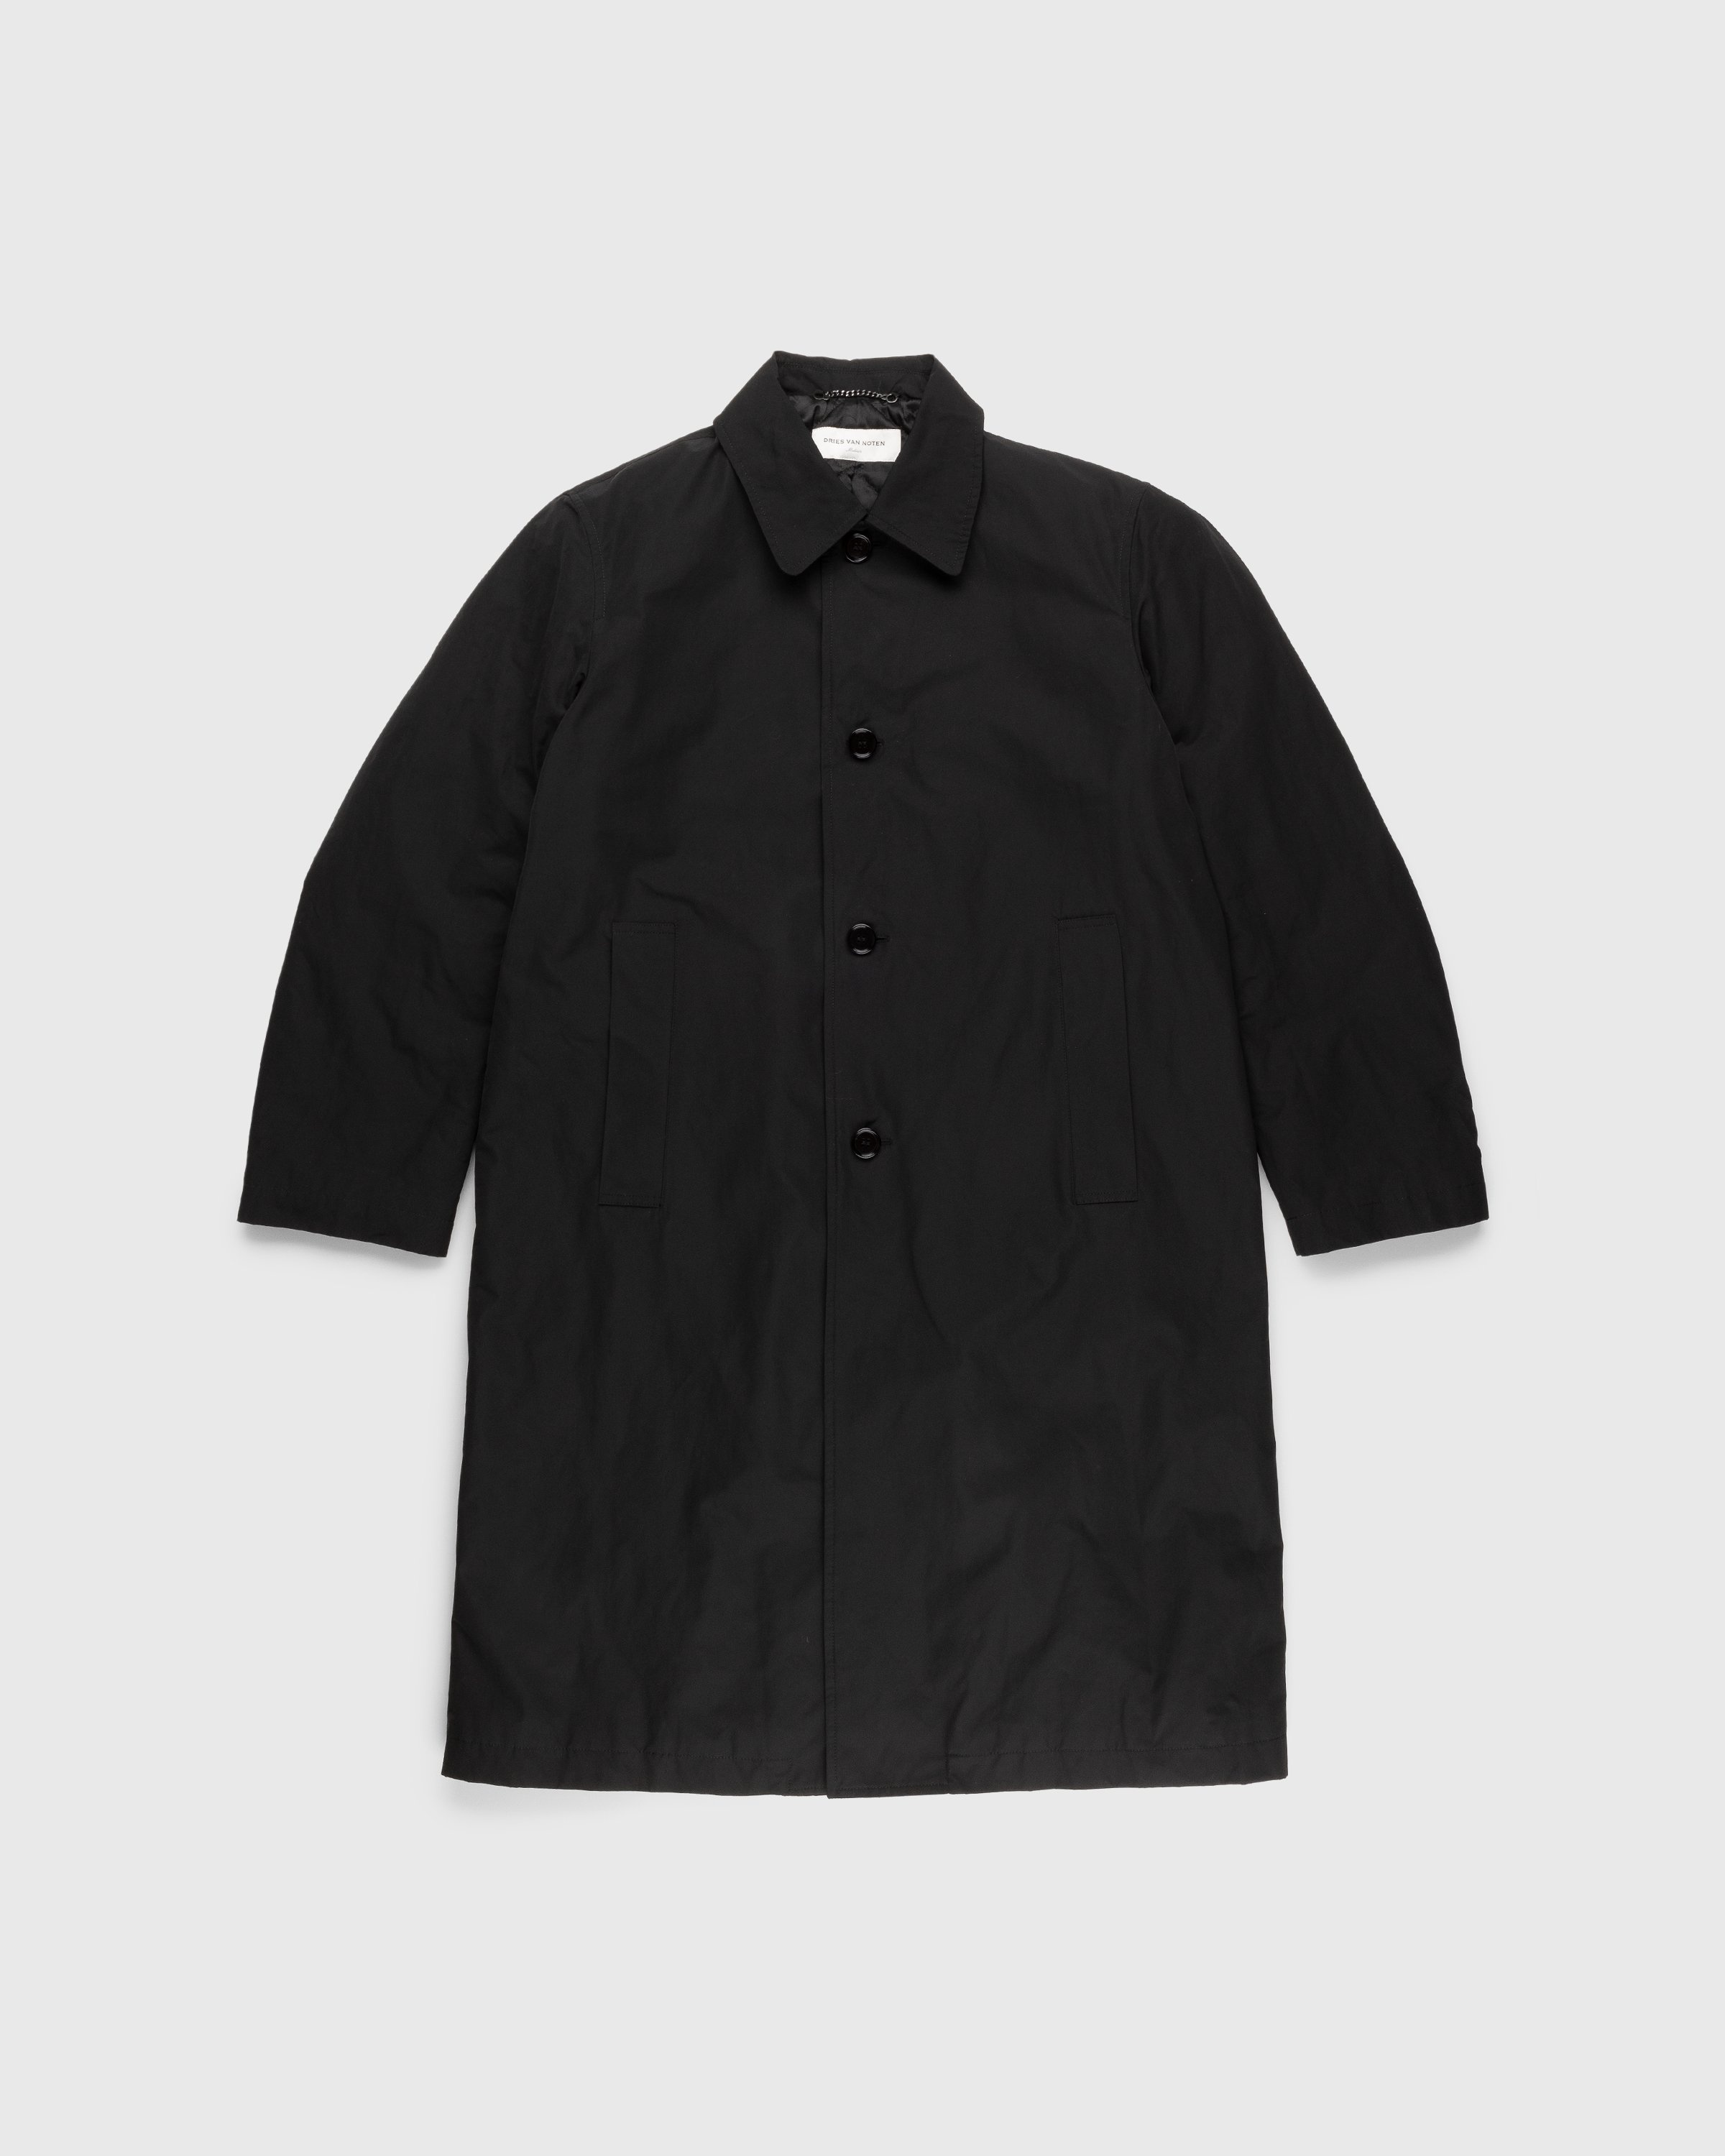 Dries van Noten – Rankle Coat Black - Trench Coats - Black - Image 1